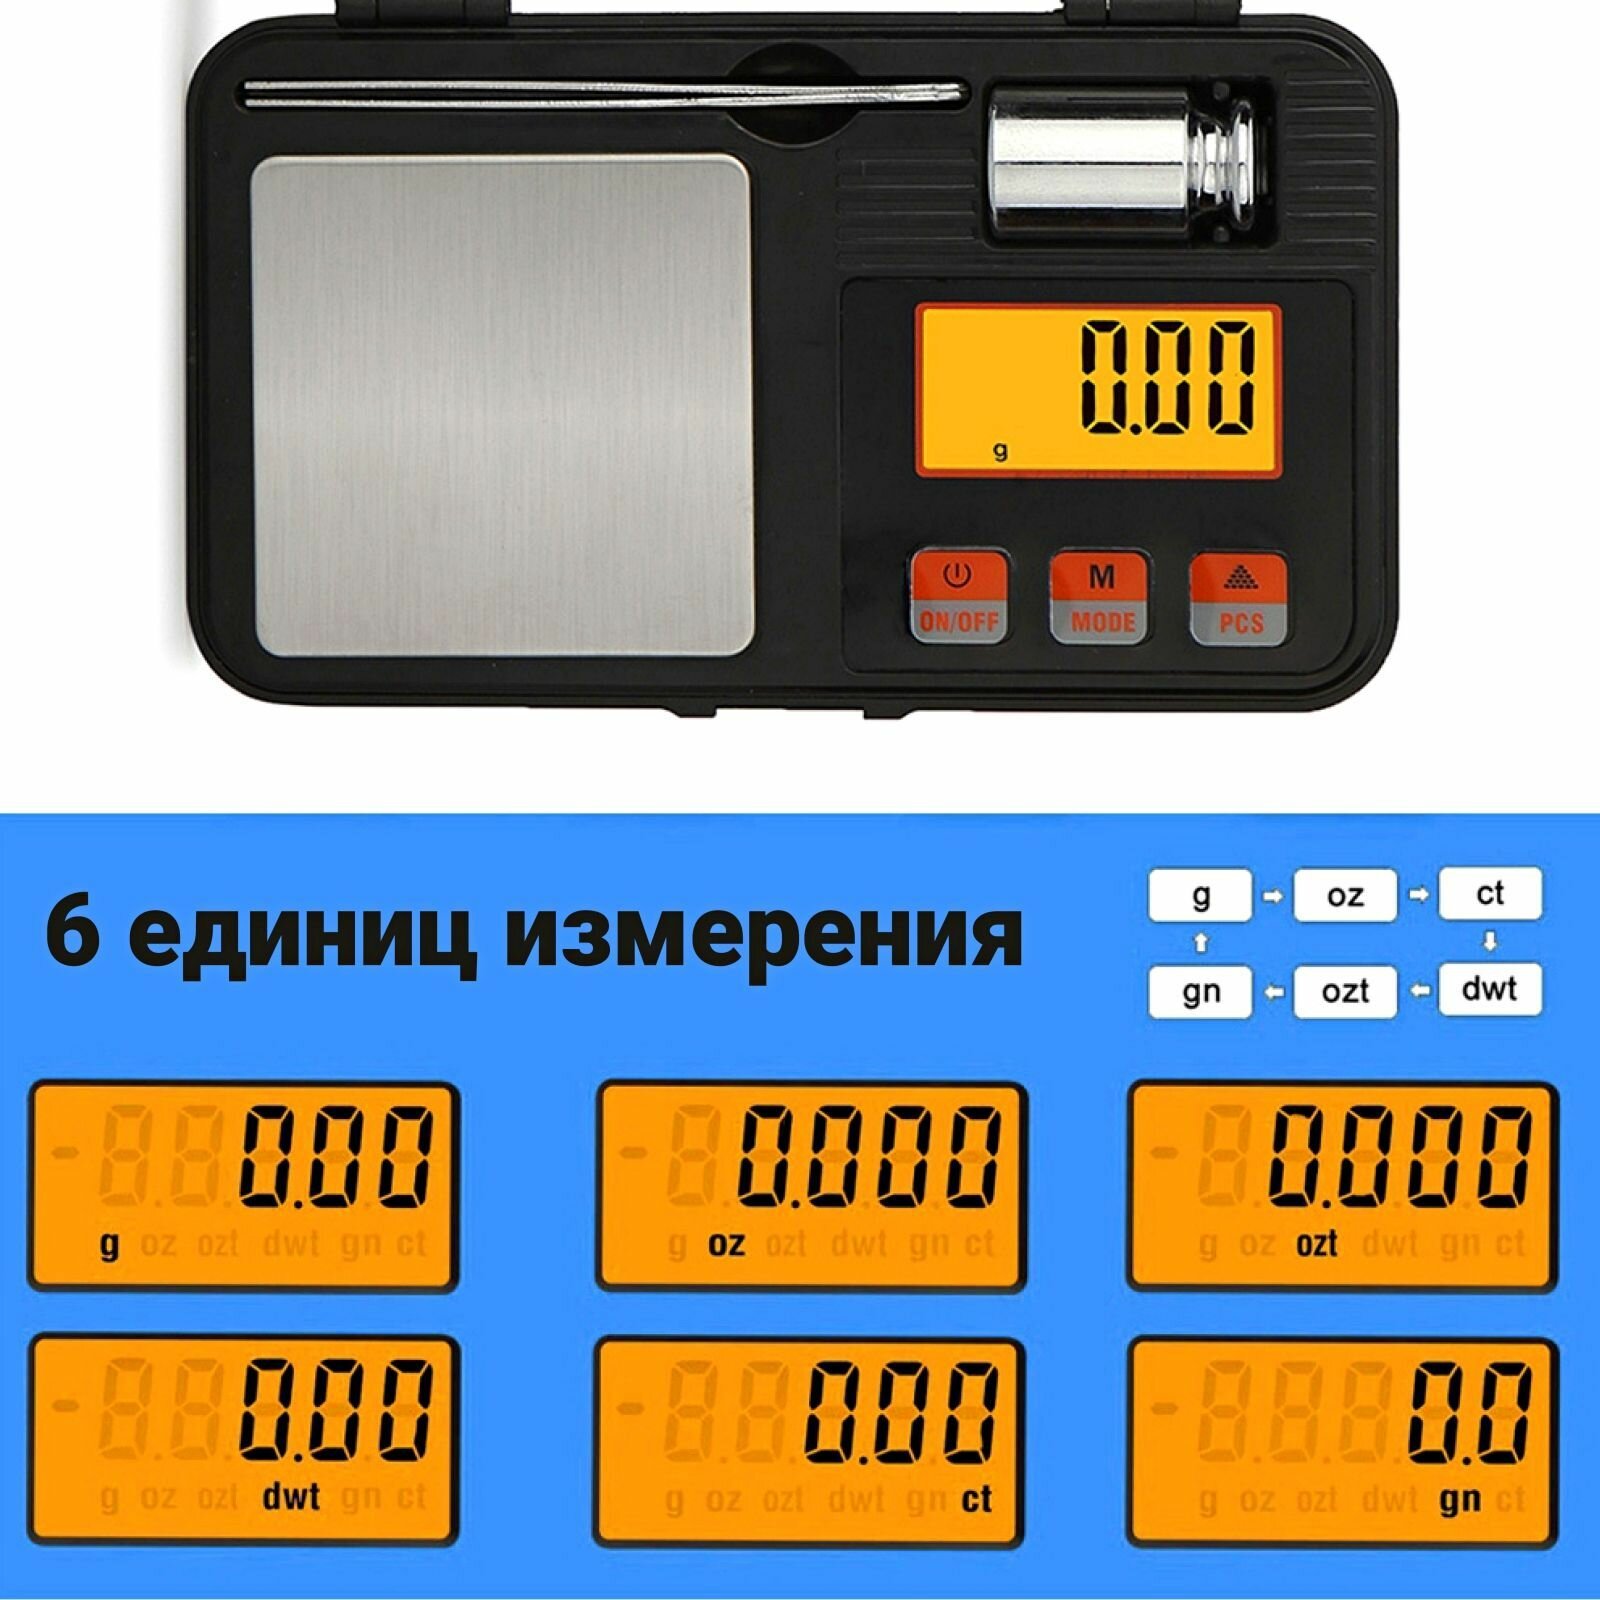 Весы ювелирные электронные карманные SIERRA MAESTRO 200/0,01g